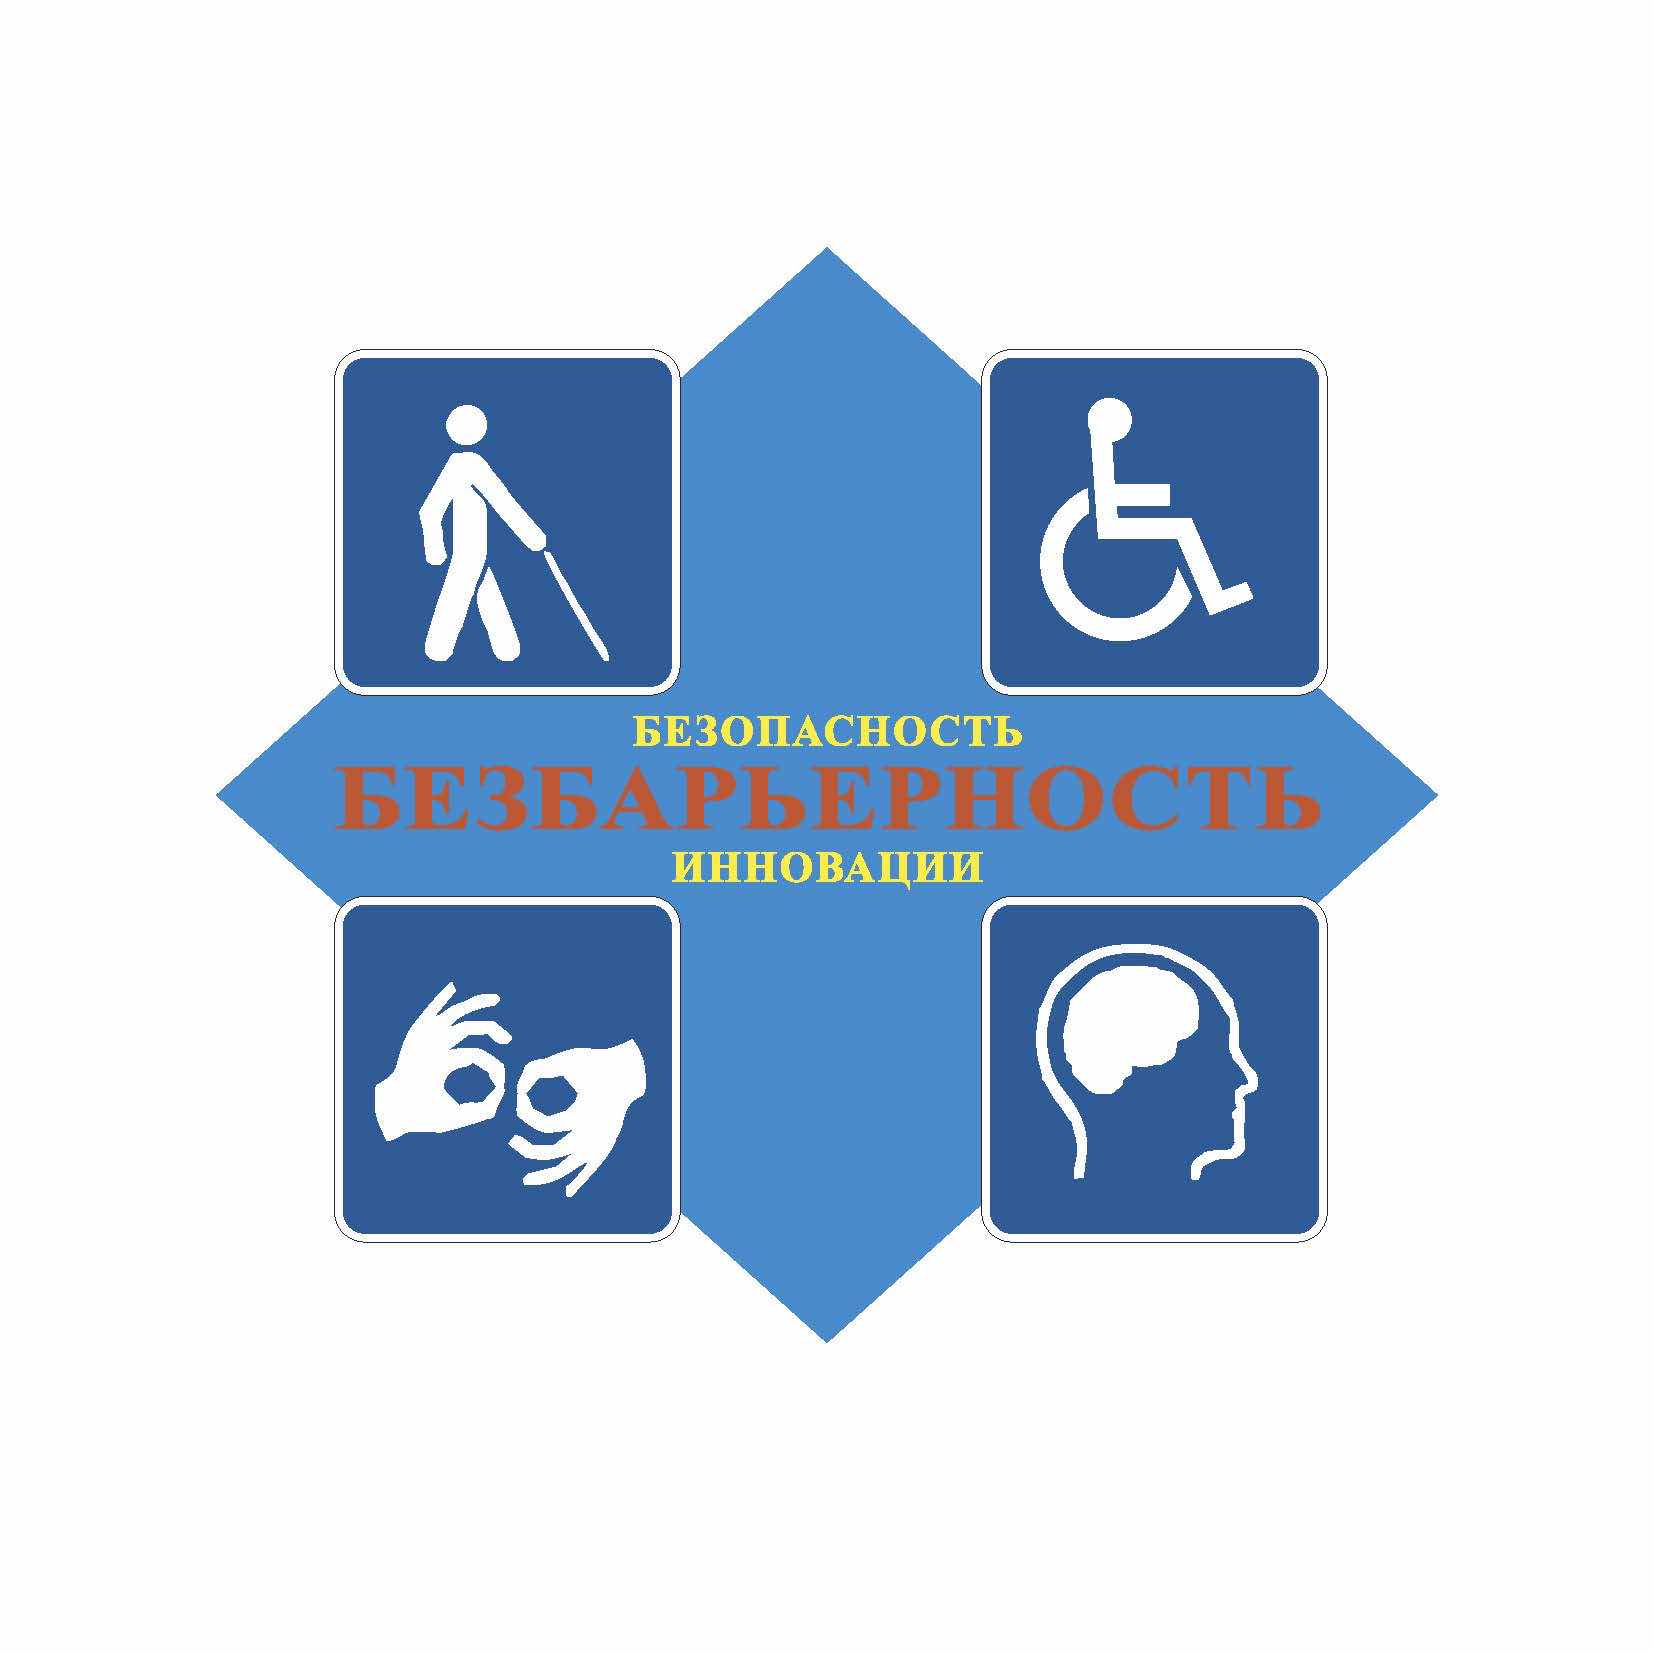 ромб синего цвета, изображающий объекты и услуги в социально значимых сферах деятельности для инвалидов и иных маломобильных групп населения, на которых обеспечены условия беспрепятственного доступа